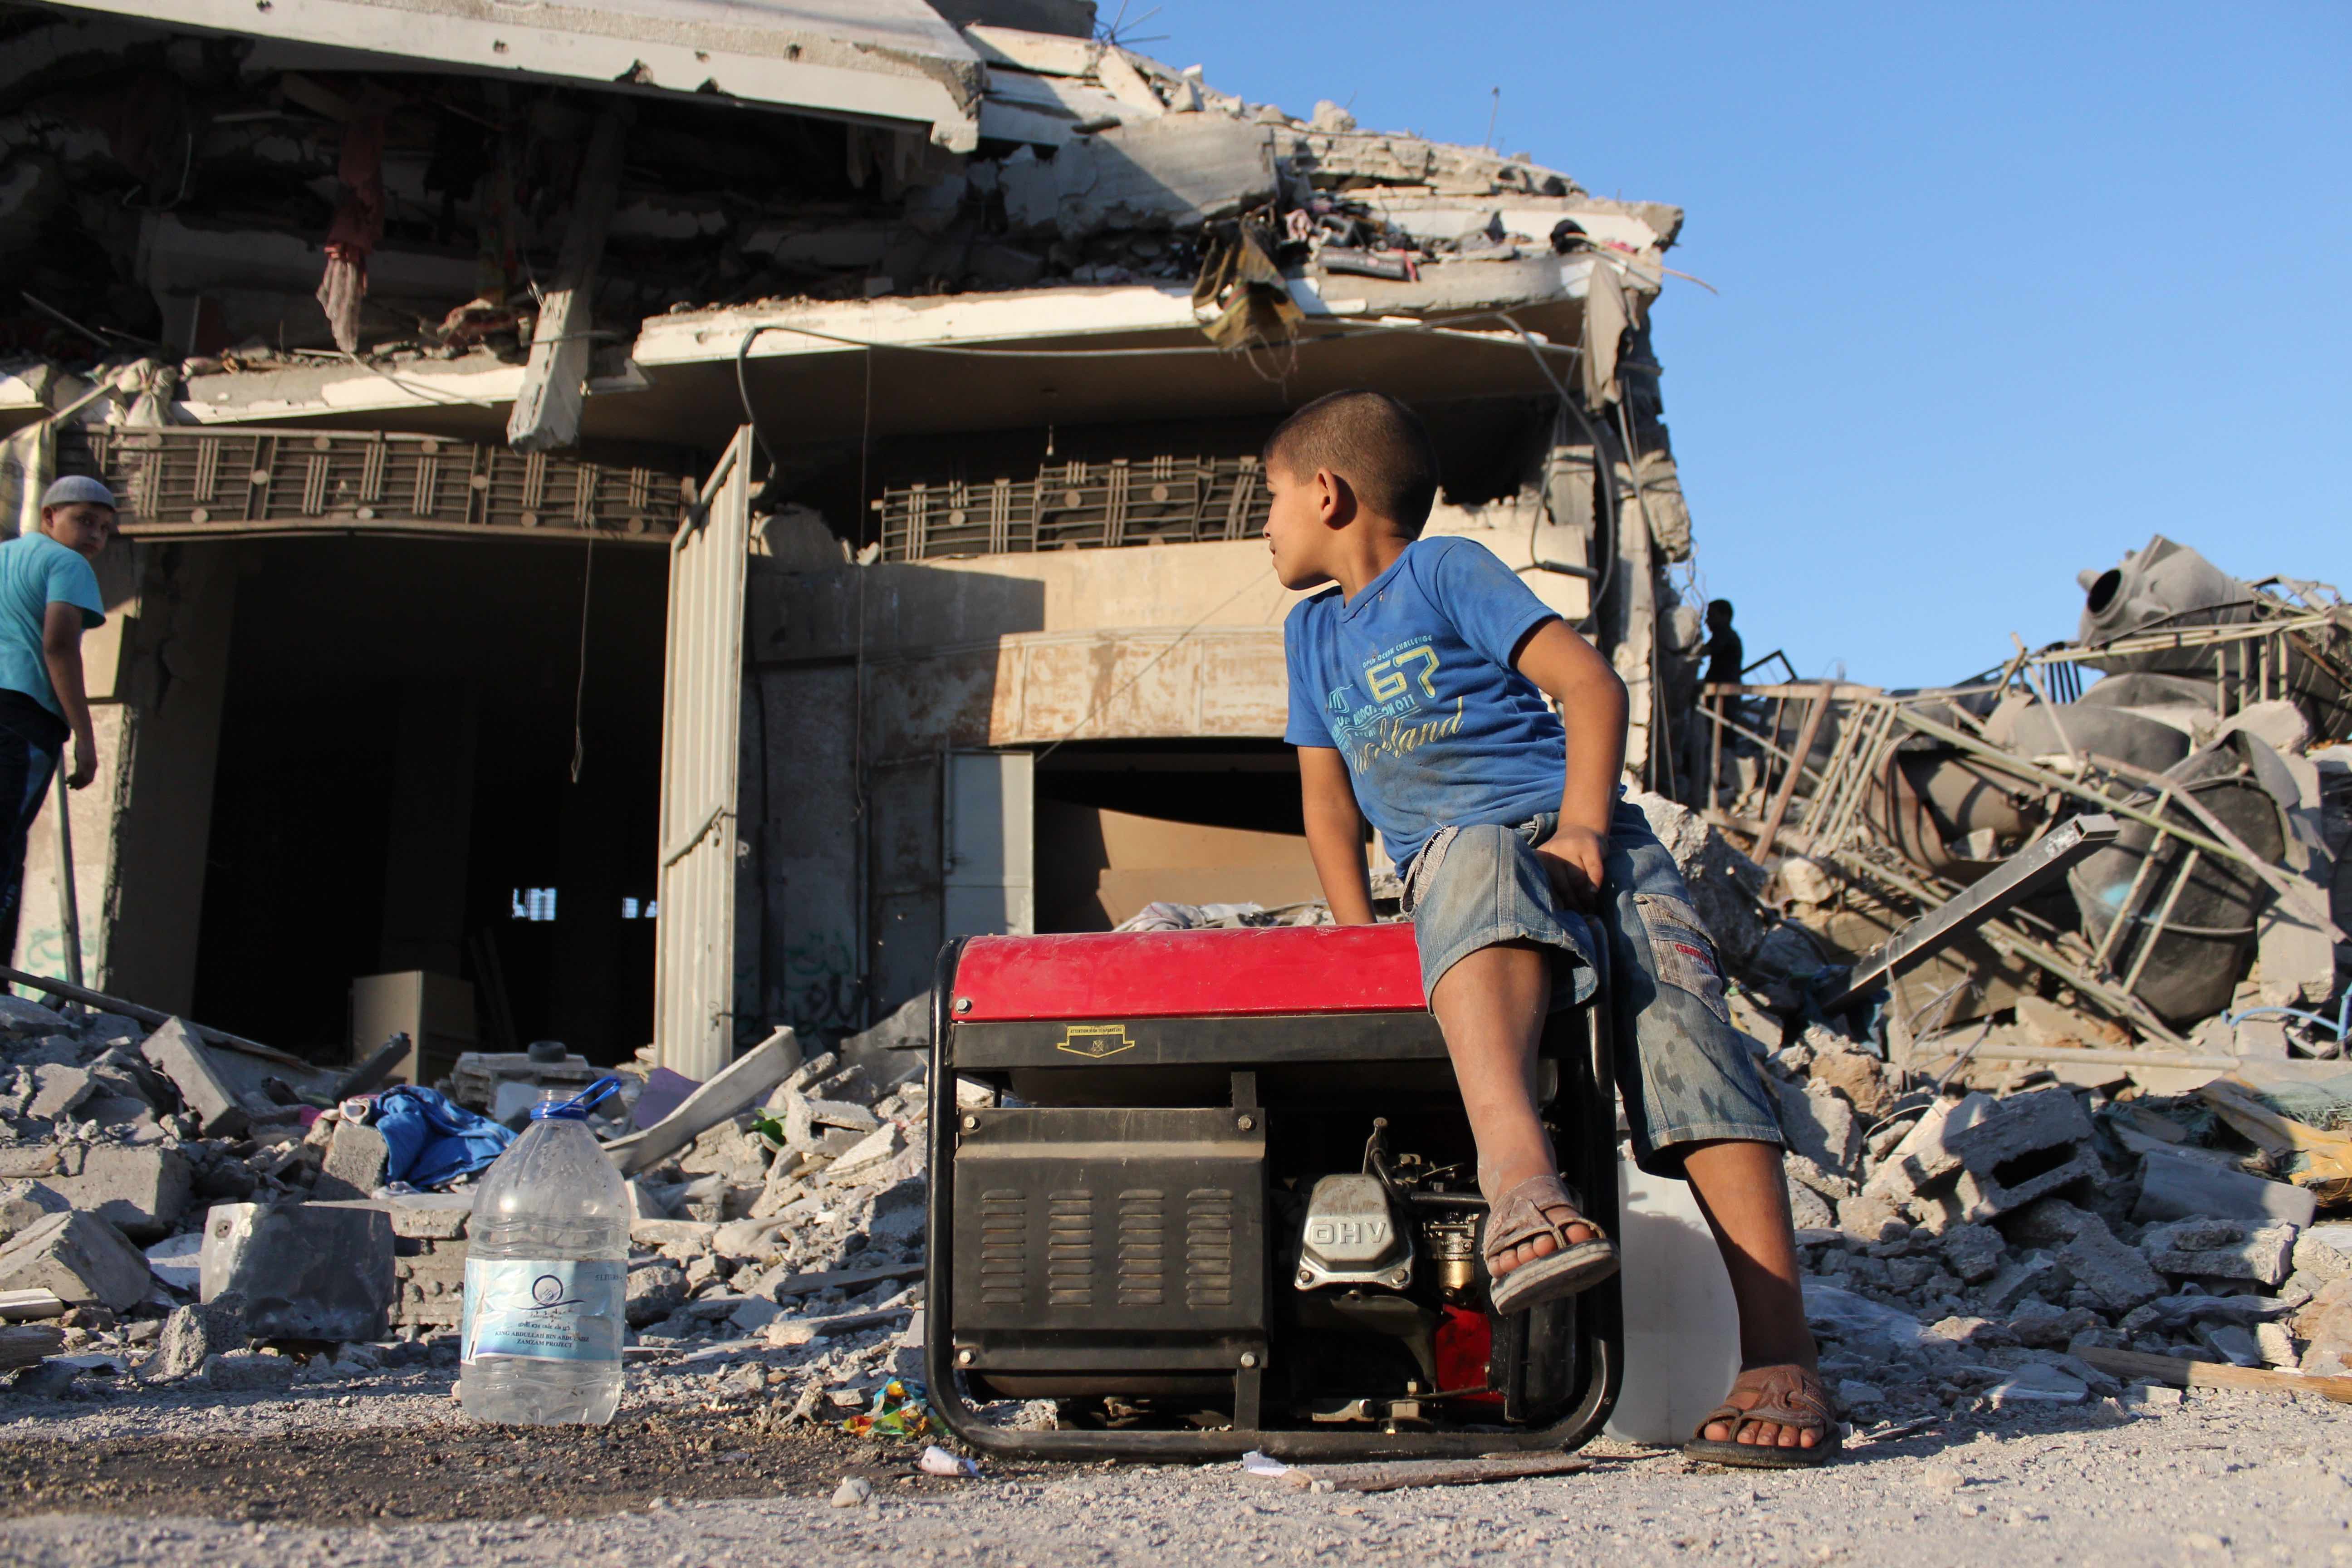 Aldeas Infantiles SOS denuncia el ataque aéreo contra sus instalaciones en Gaza